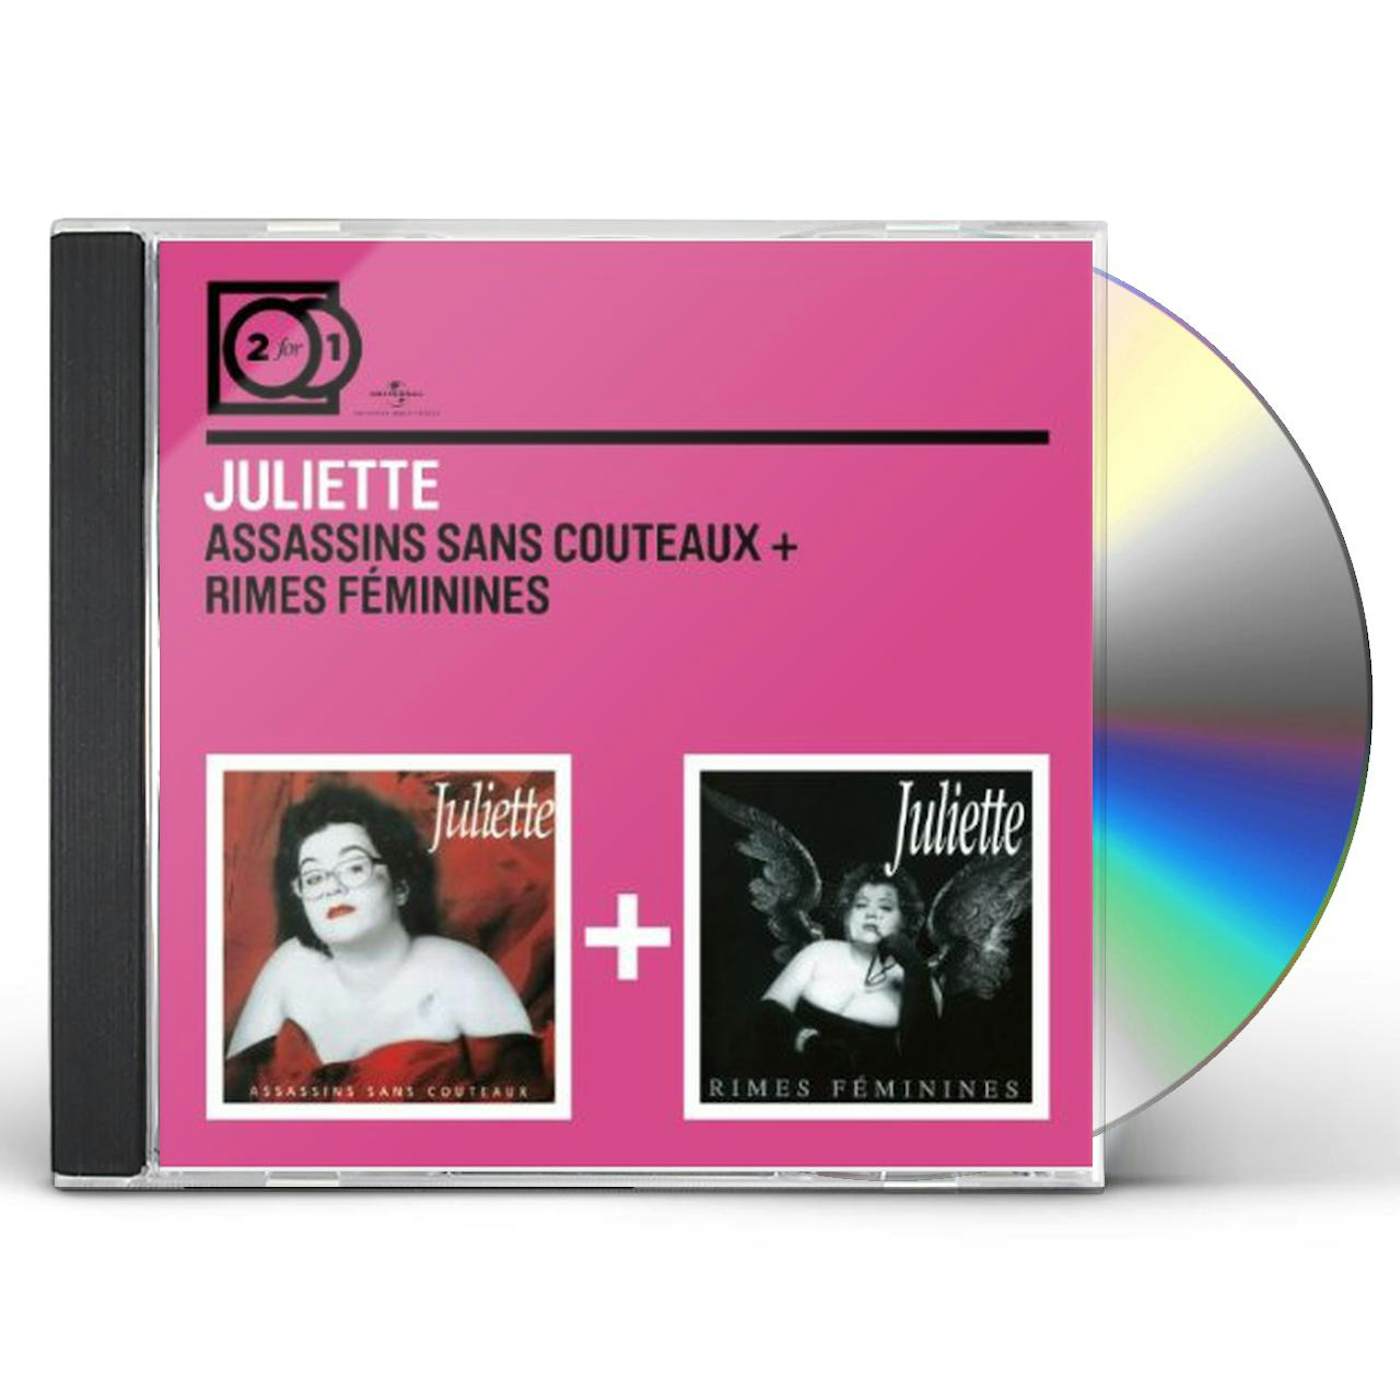 Juliette ASSASSINS SANS COUTEAUX/RIMES CD